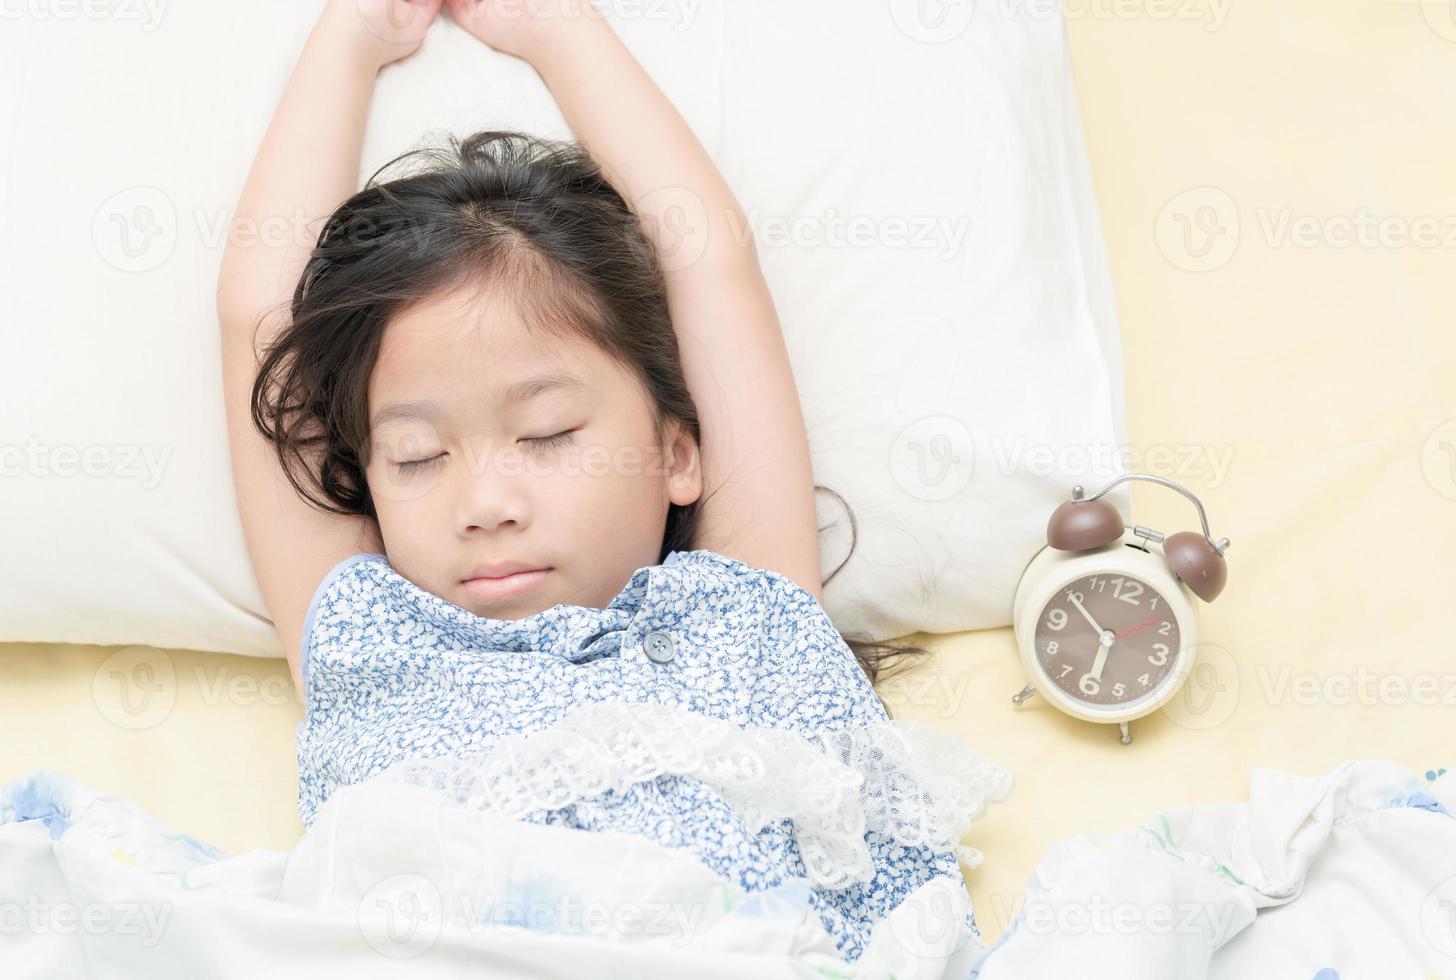 mignonne fille sommeil sur lit avec alarme horloge. photo